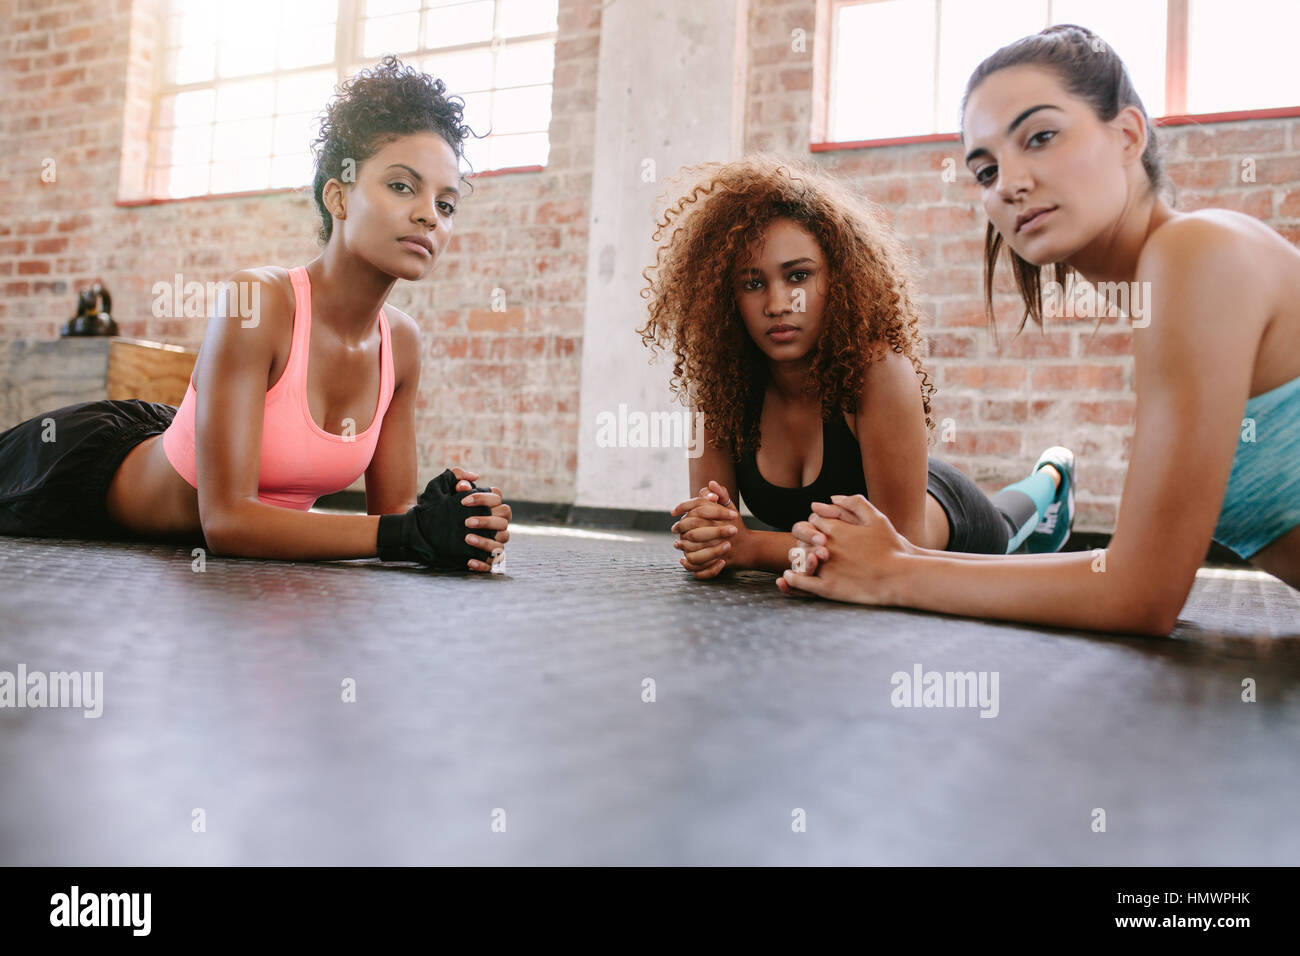 Porträt von drei jungen Frauen auf Turnhalle Boden liegend und Blick in die Kamera. Frauen Fitness Klasse. Stockfoto